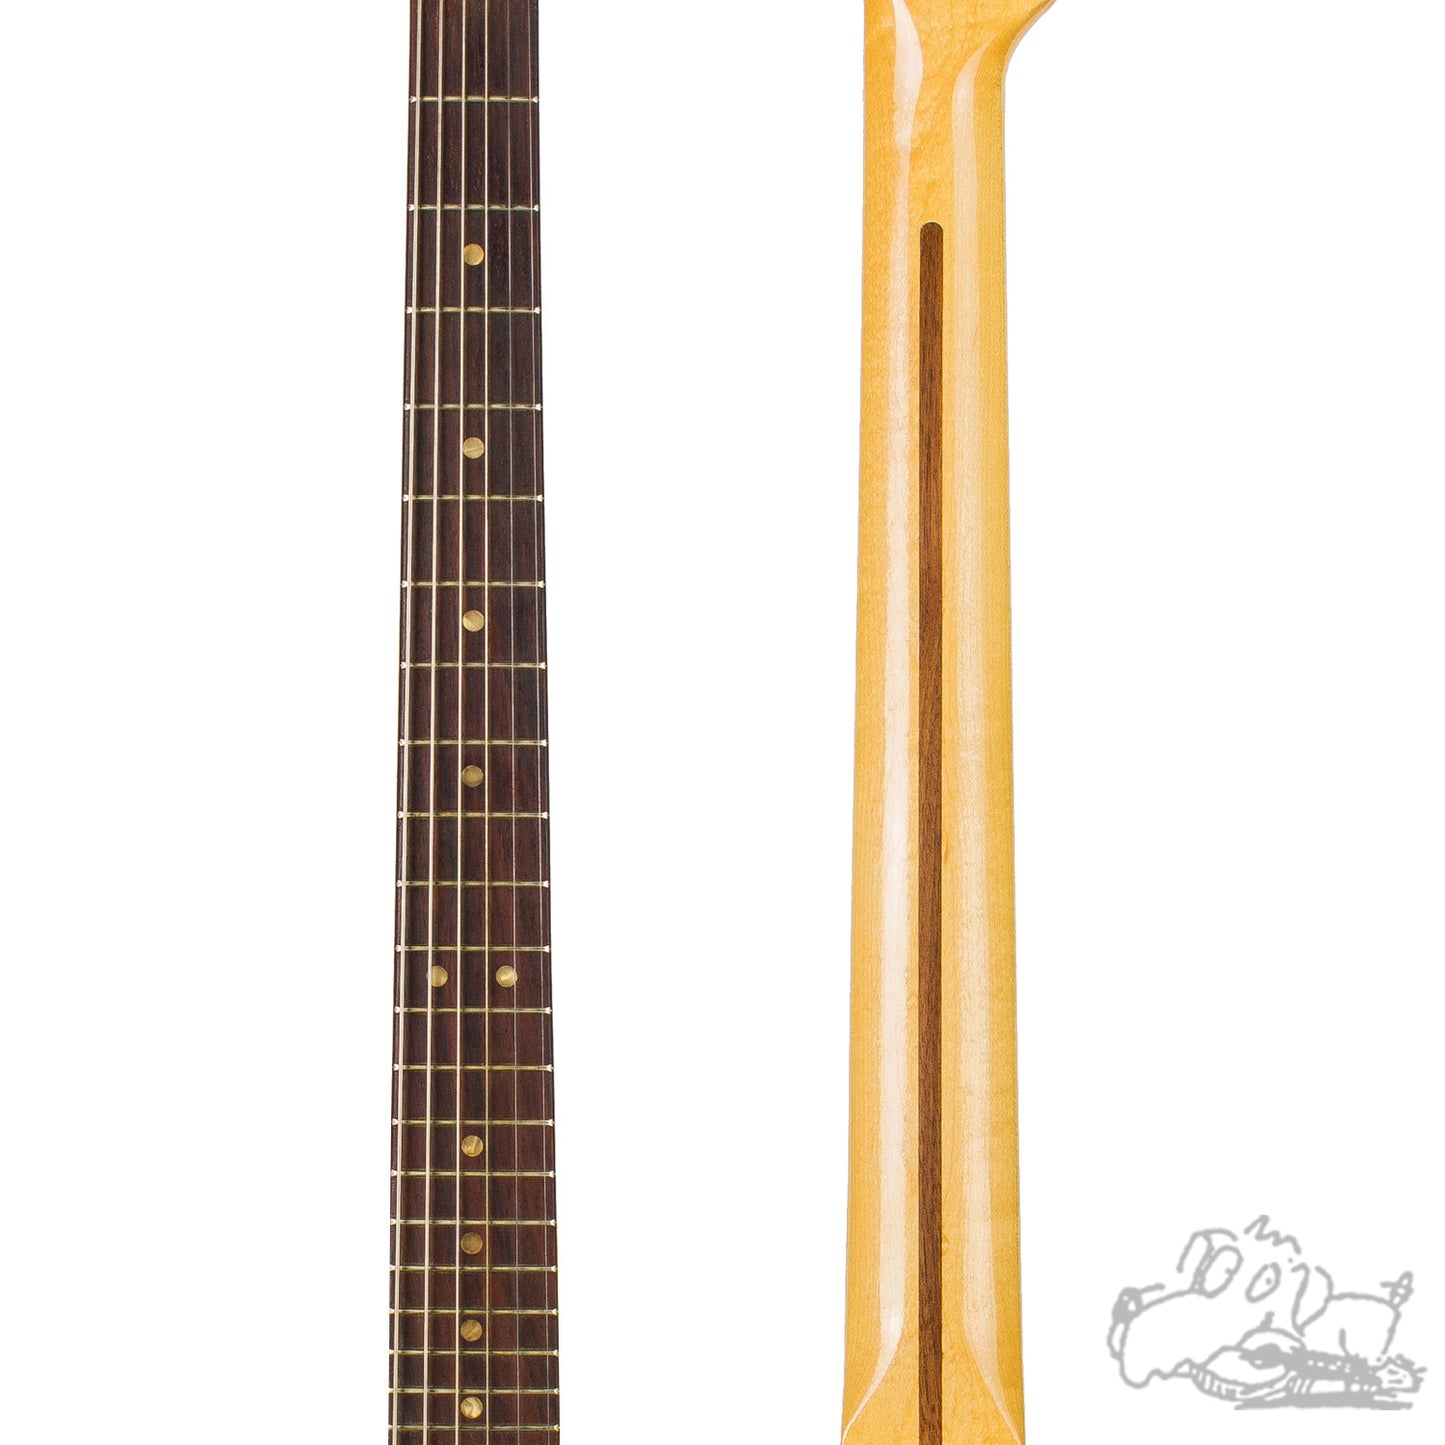 1969 Fender Telecaster And 1968 Fender Pro Reverb